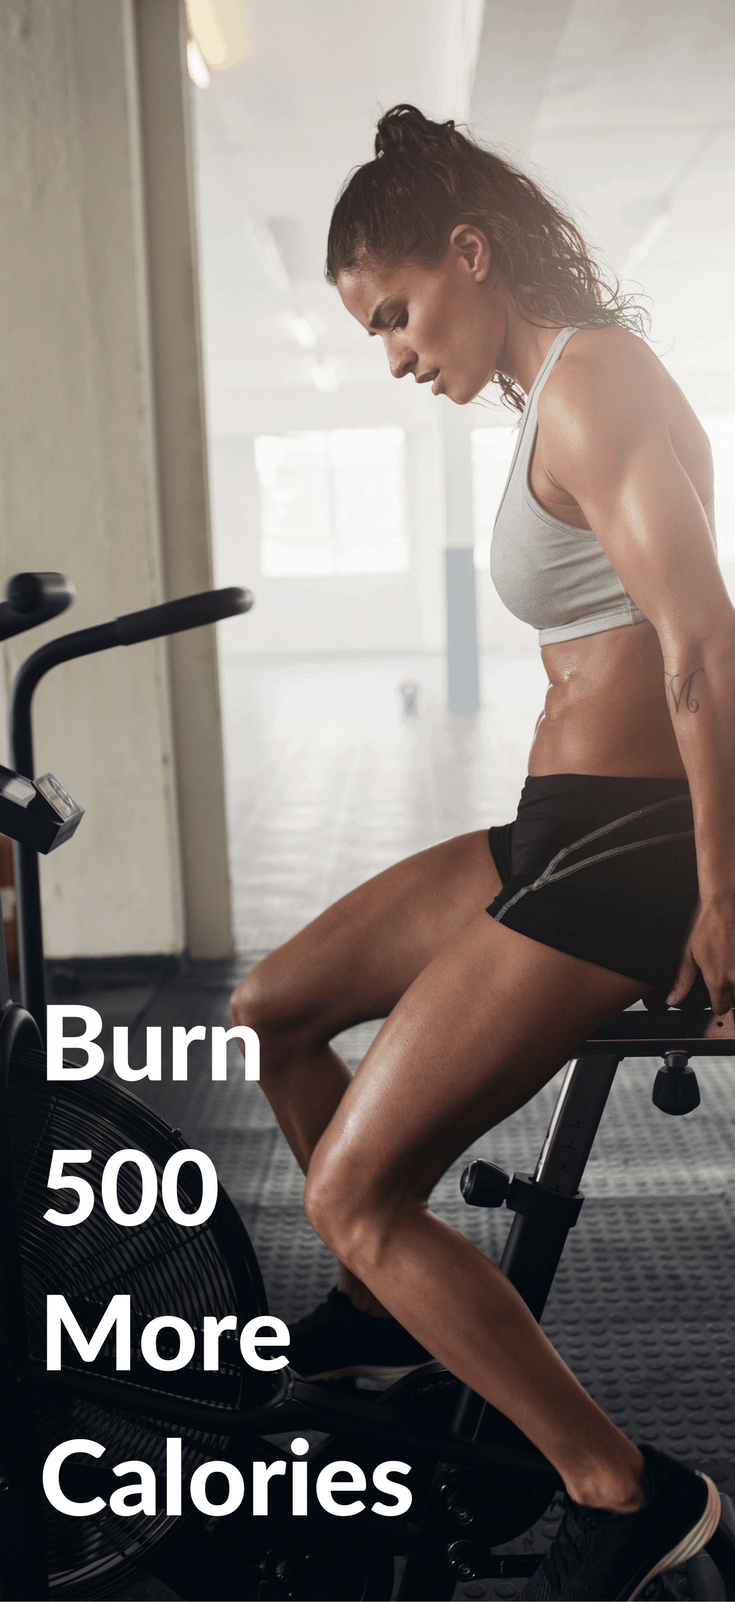 burn more calories